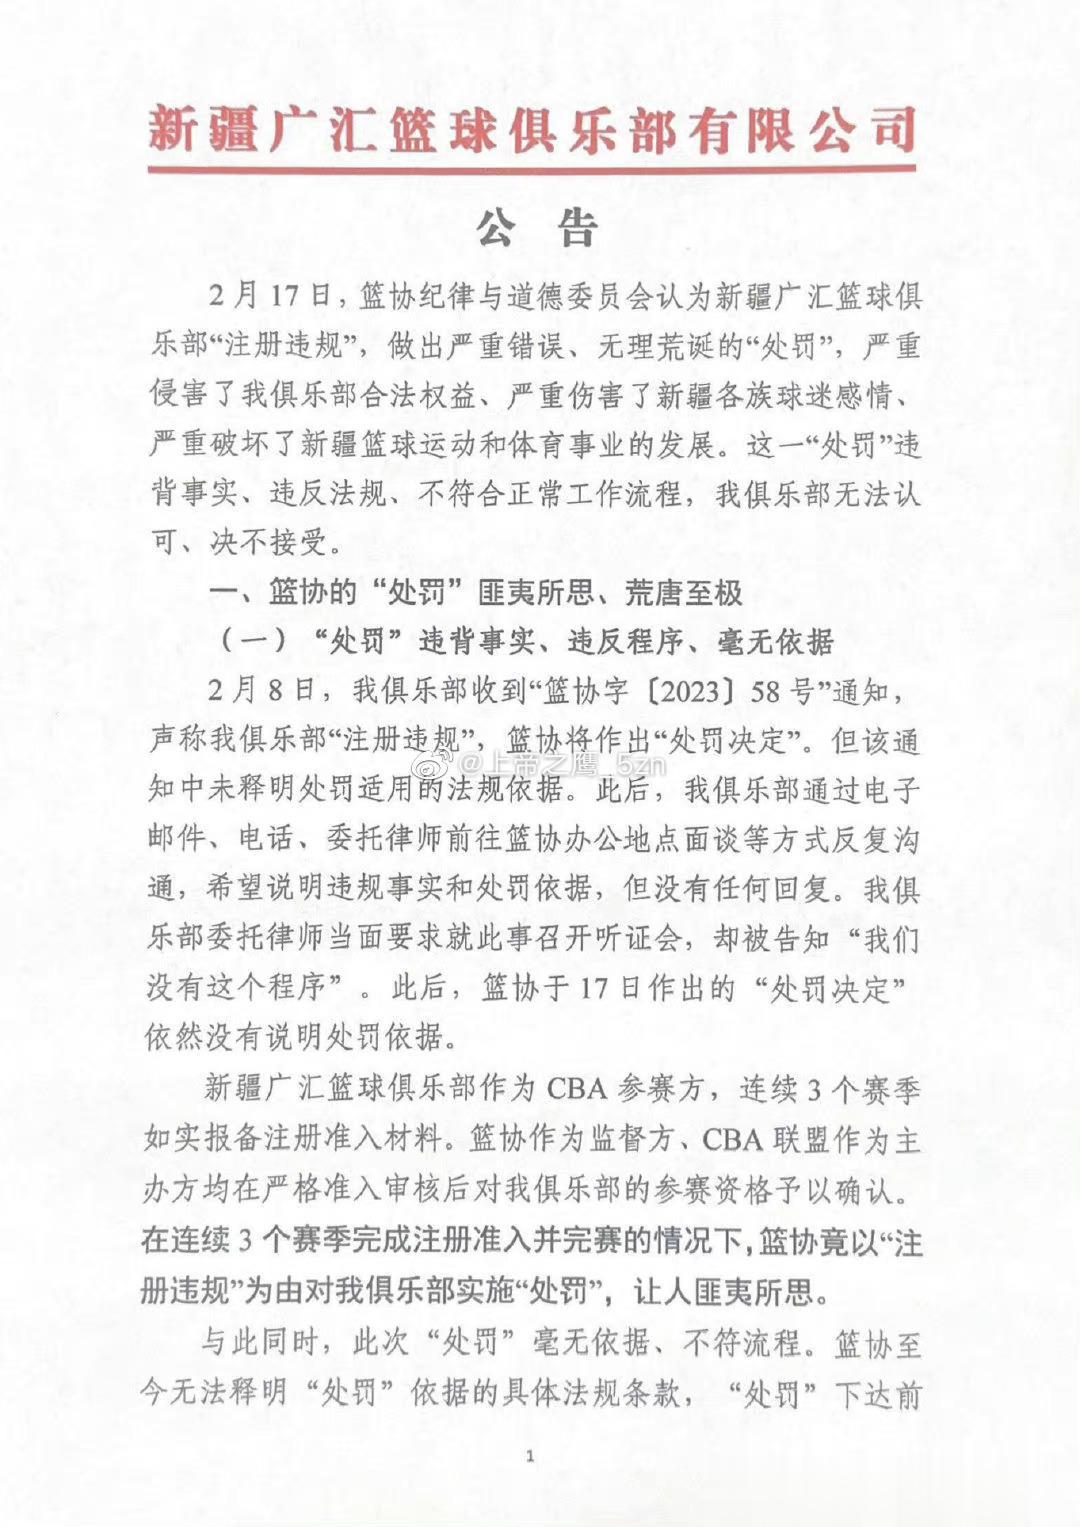  新疆广汇俱乐部深夜发表声明，怒喷篮协的处罚“严重错误、无理荒诞”，并宣布退出C